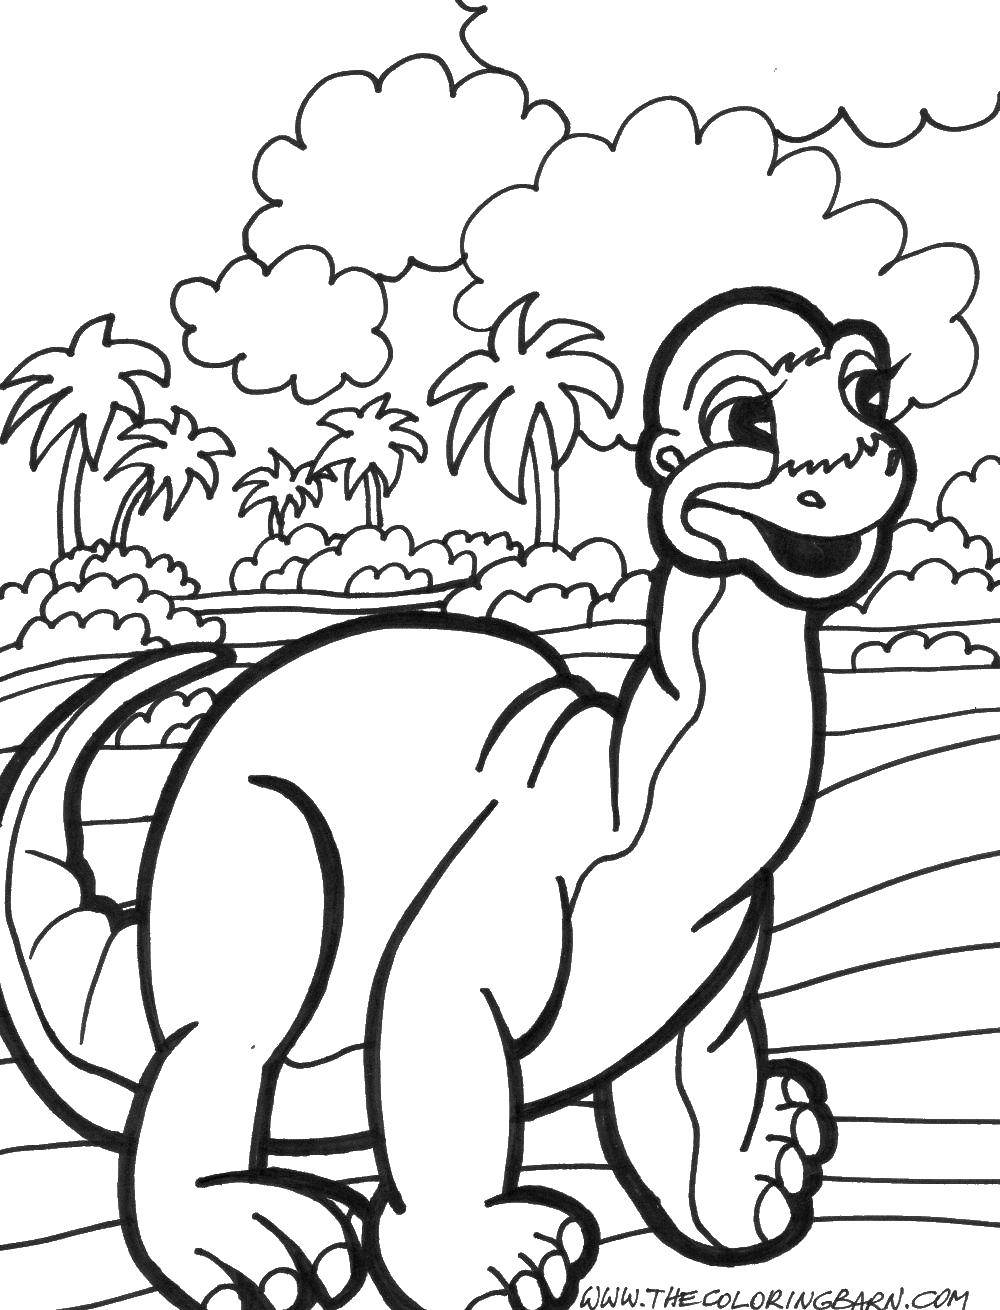 Название: Раскраска Детеныш динозавра. Категория: Персонаж из мультфильма. Теги: мультик, детеныш динозавра.